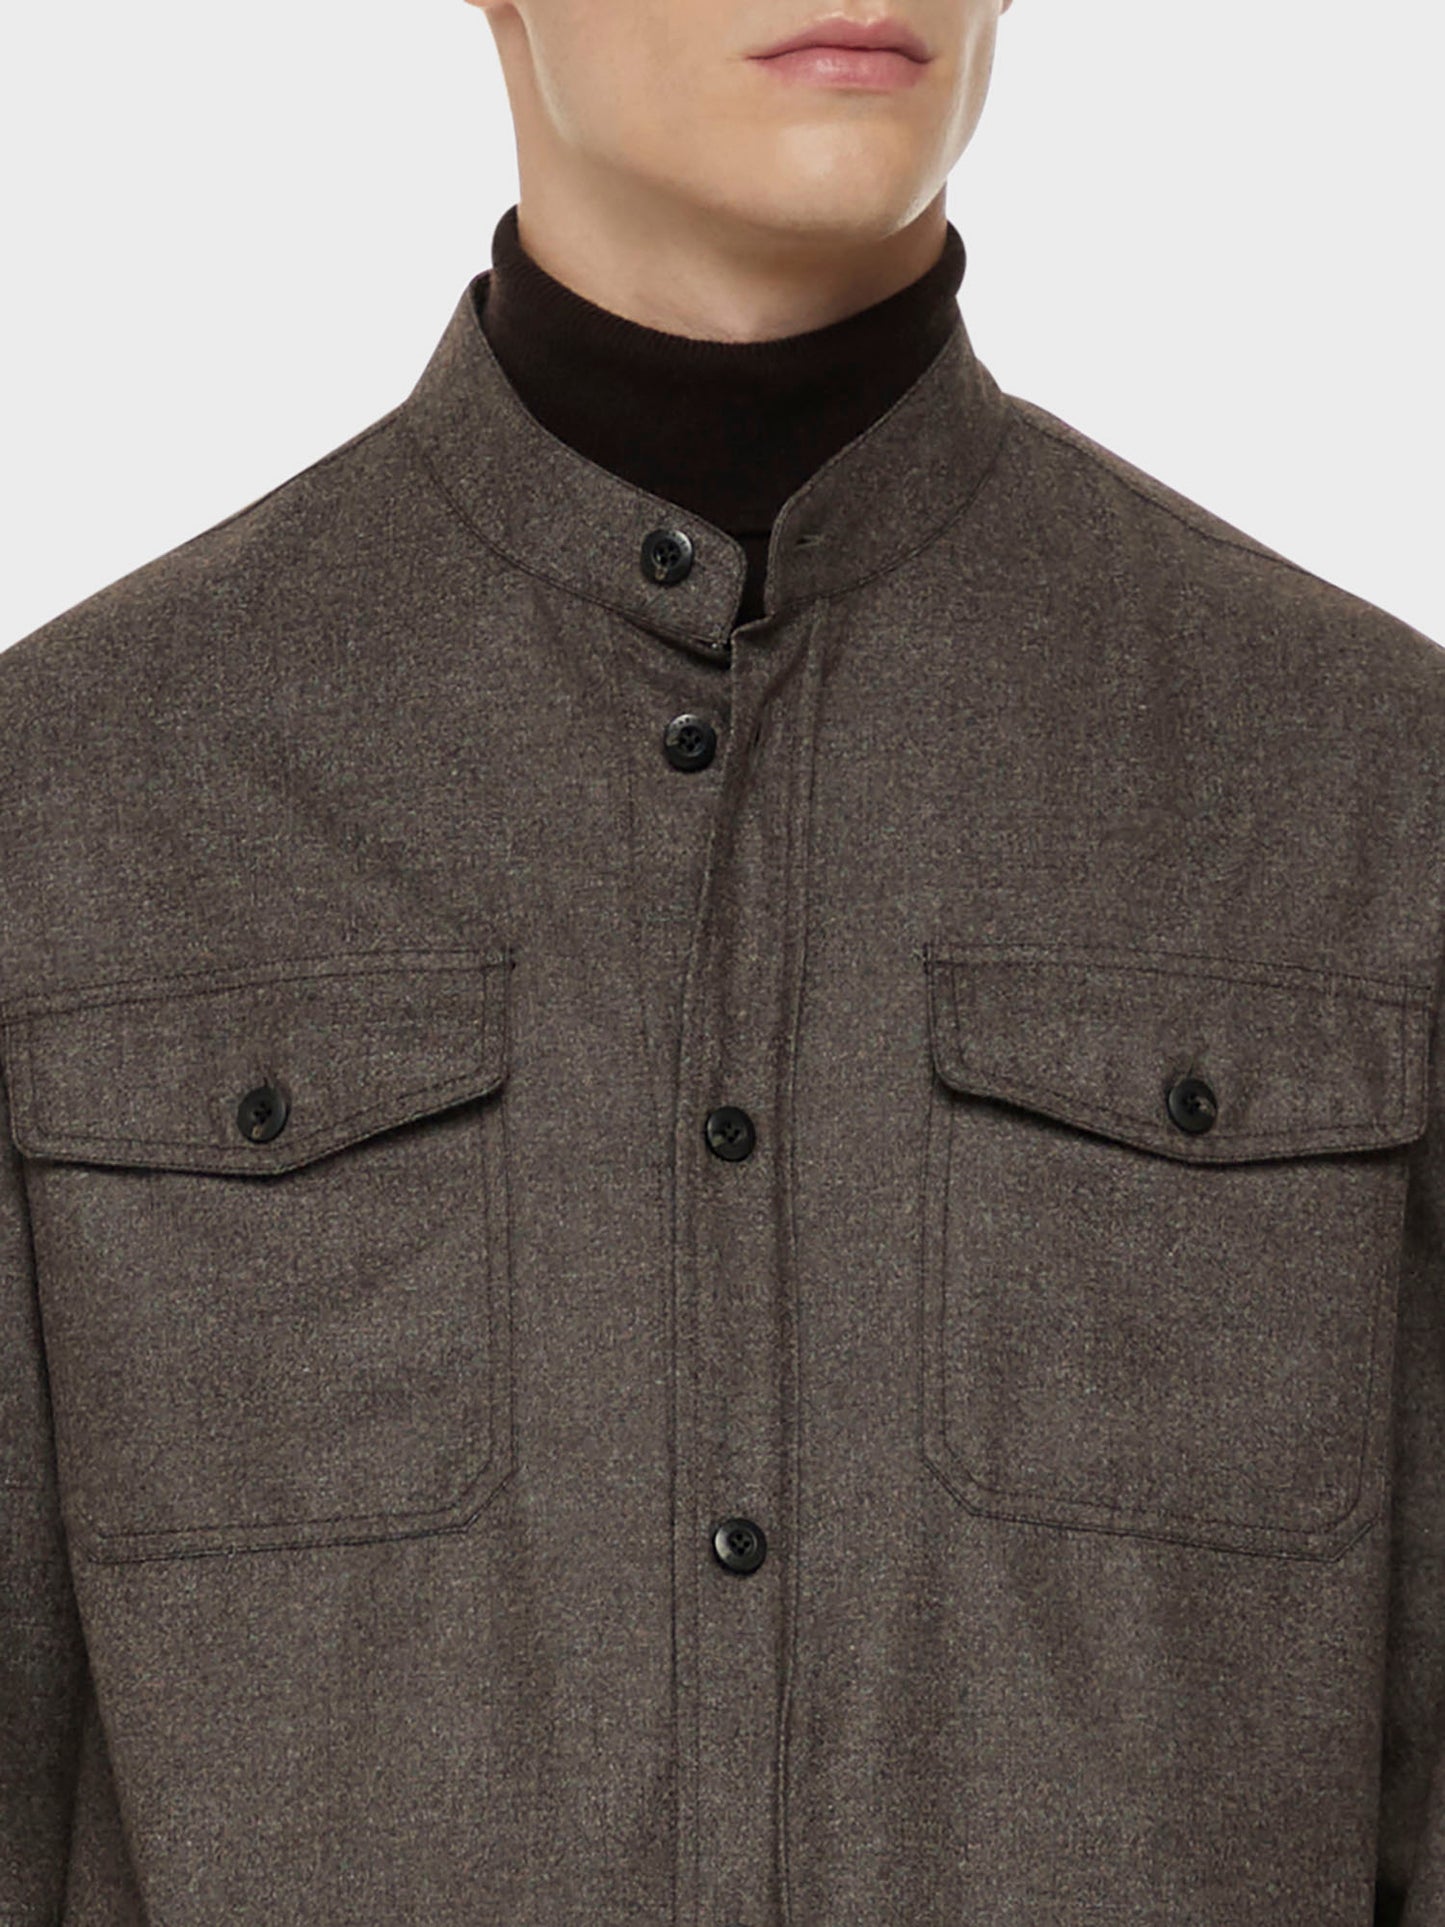 Caruso Menswear Abbigliamento Uomo Overshirt in flanella di lana marrone dettaglio